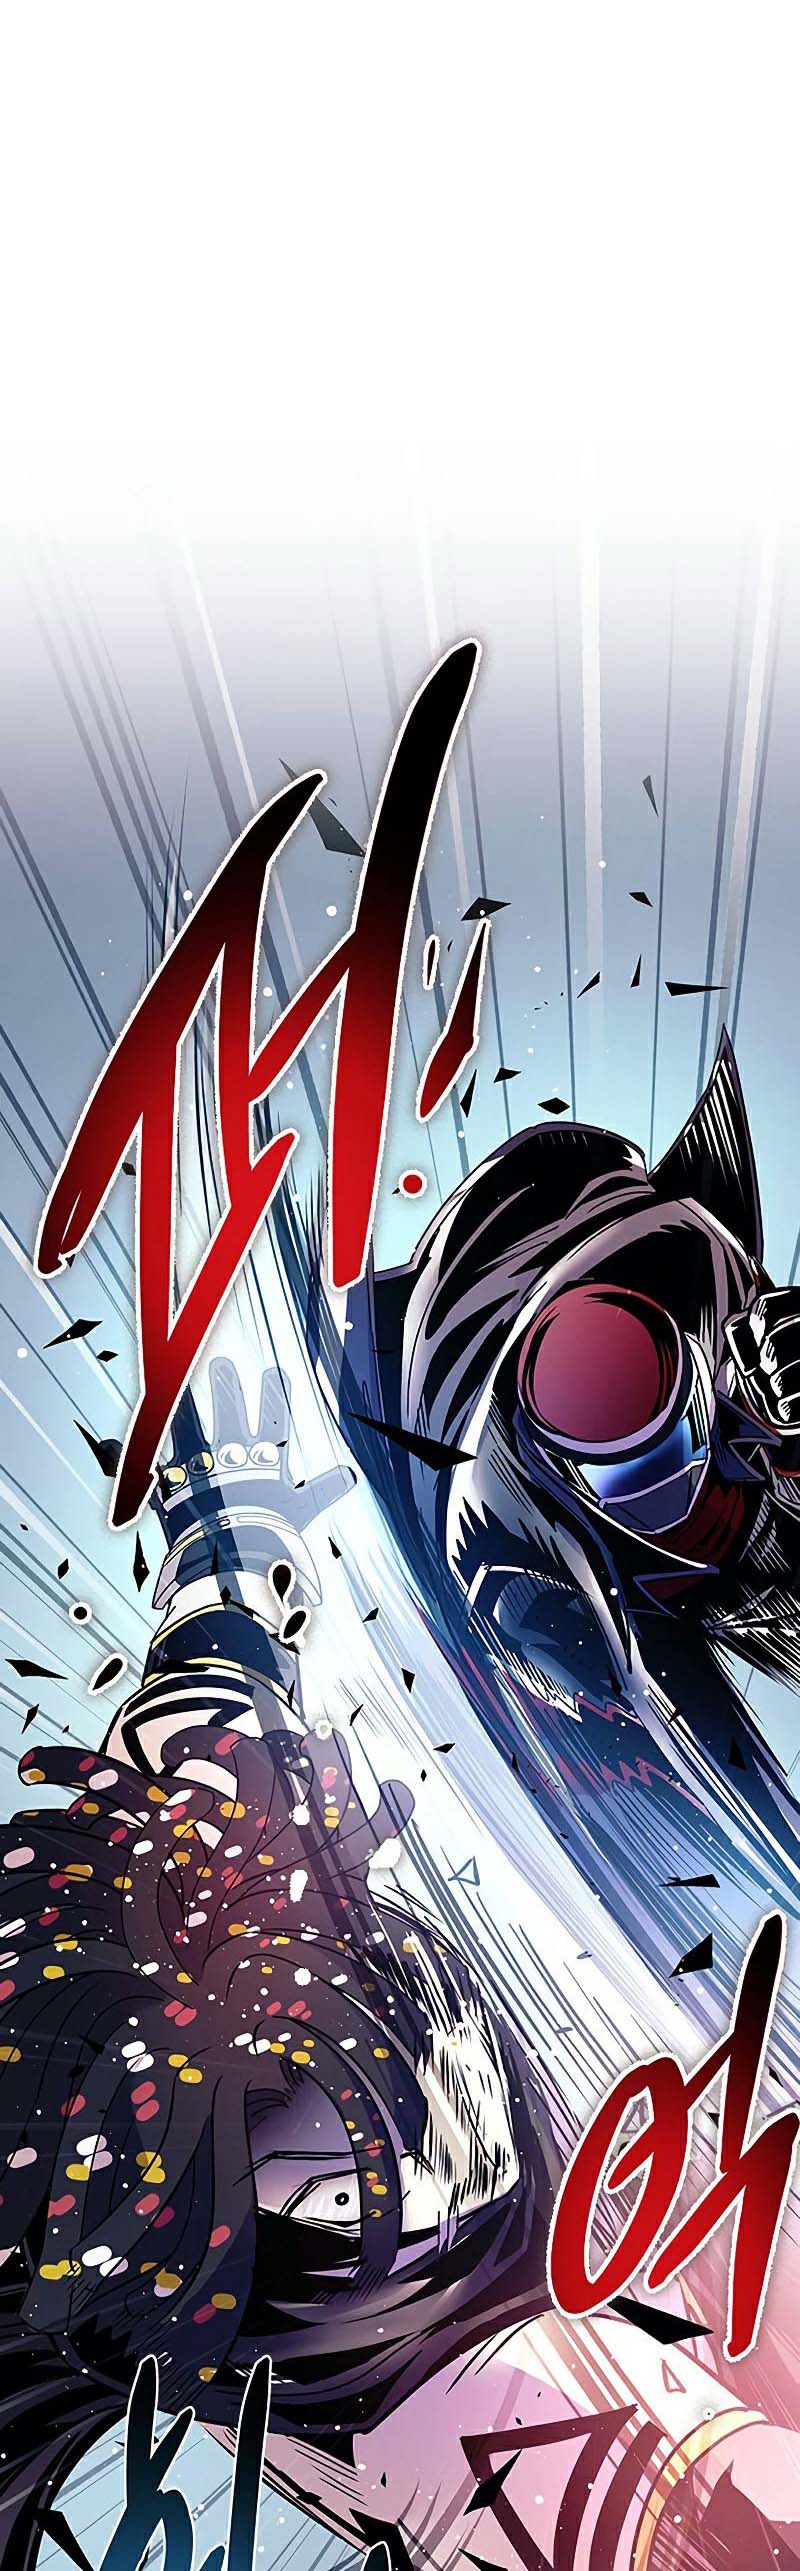 อ่าน เรื่อง Villain To Kill 127 spy manga 02